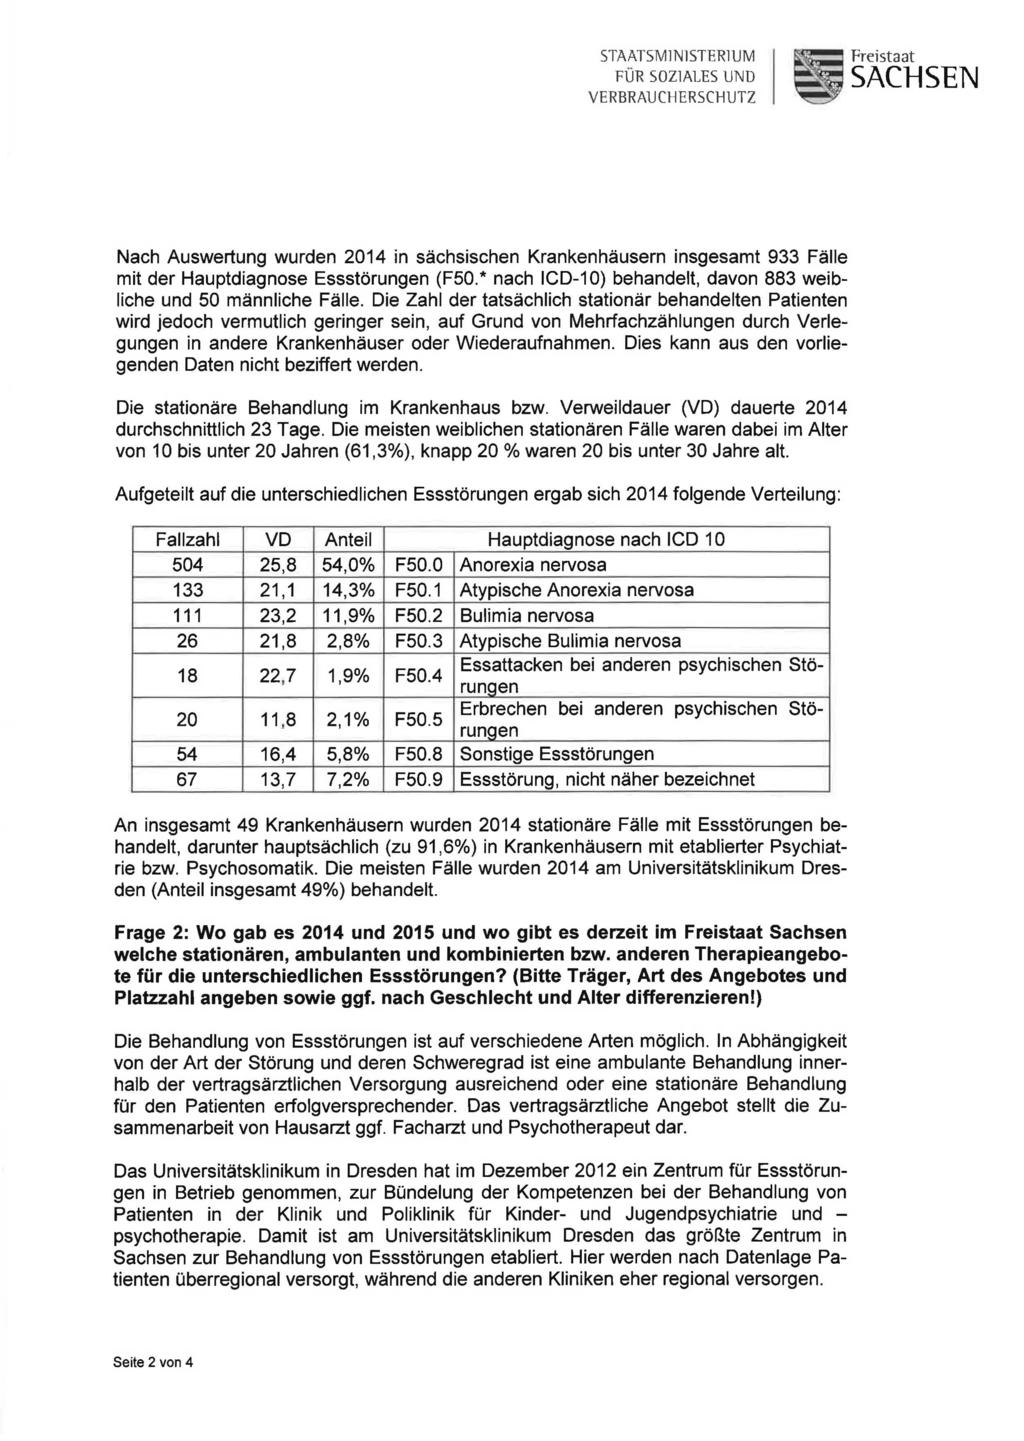 STAATSMlNlSTERlUM FÜR SOZlALES UND VERBRAUC~ERSC~UTZ Freistaat SACHSEN Nach Auswertung wurden 2014 in sächsischen Krankenhäusern insgesamt 933 Fälle mit der Hauptdiagnose Essstörungen (F50.